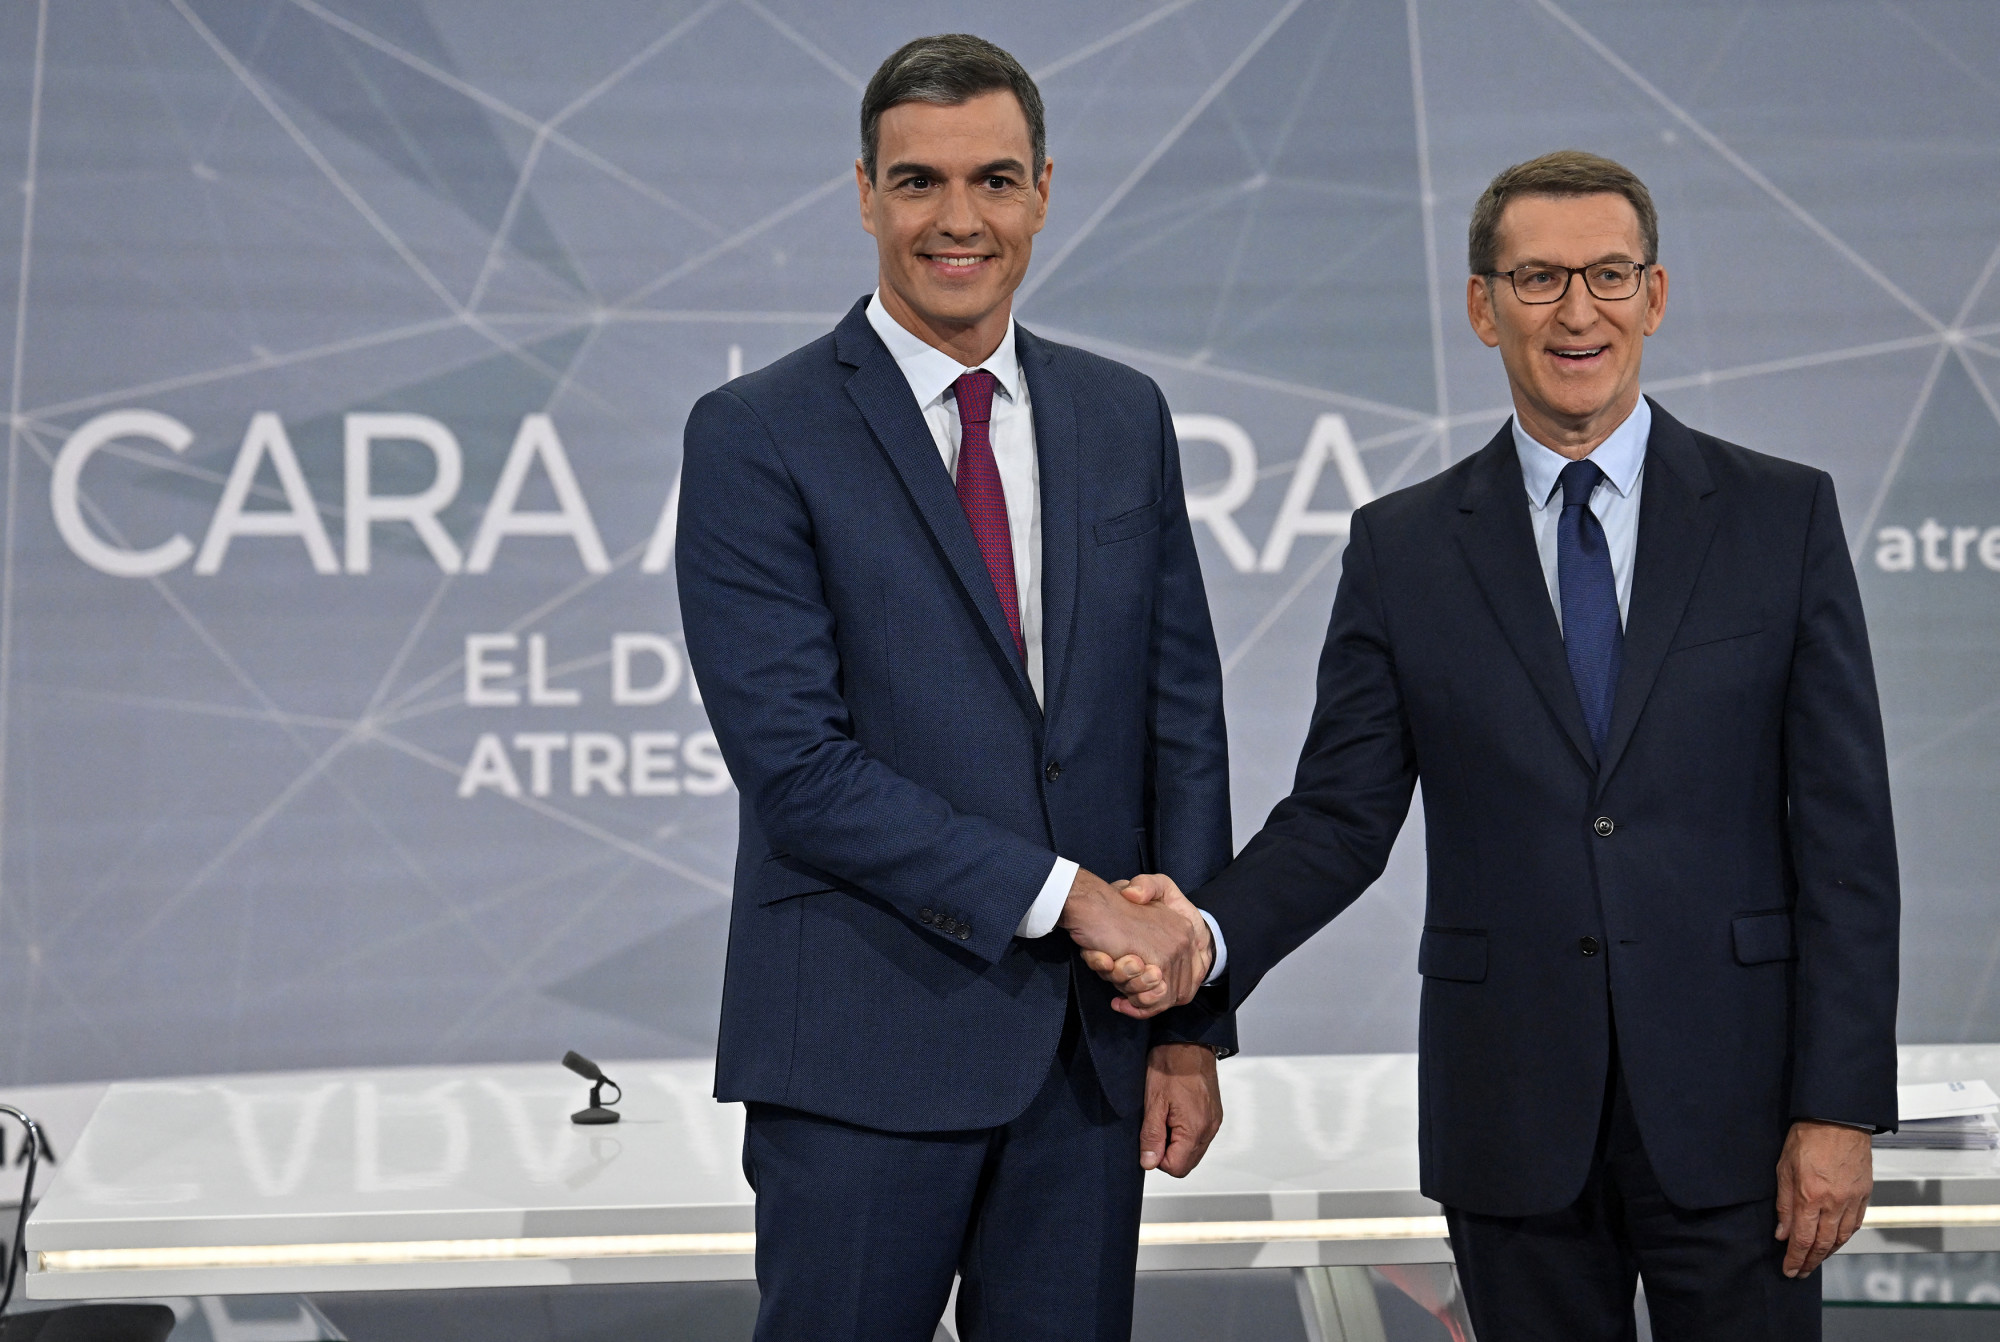 A szélsőjobb segítségével hódíthatják vissza Spanyolországot a konzervatívok